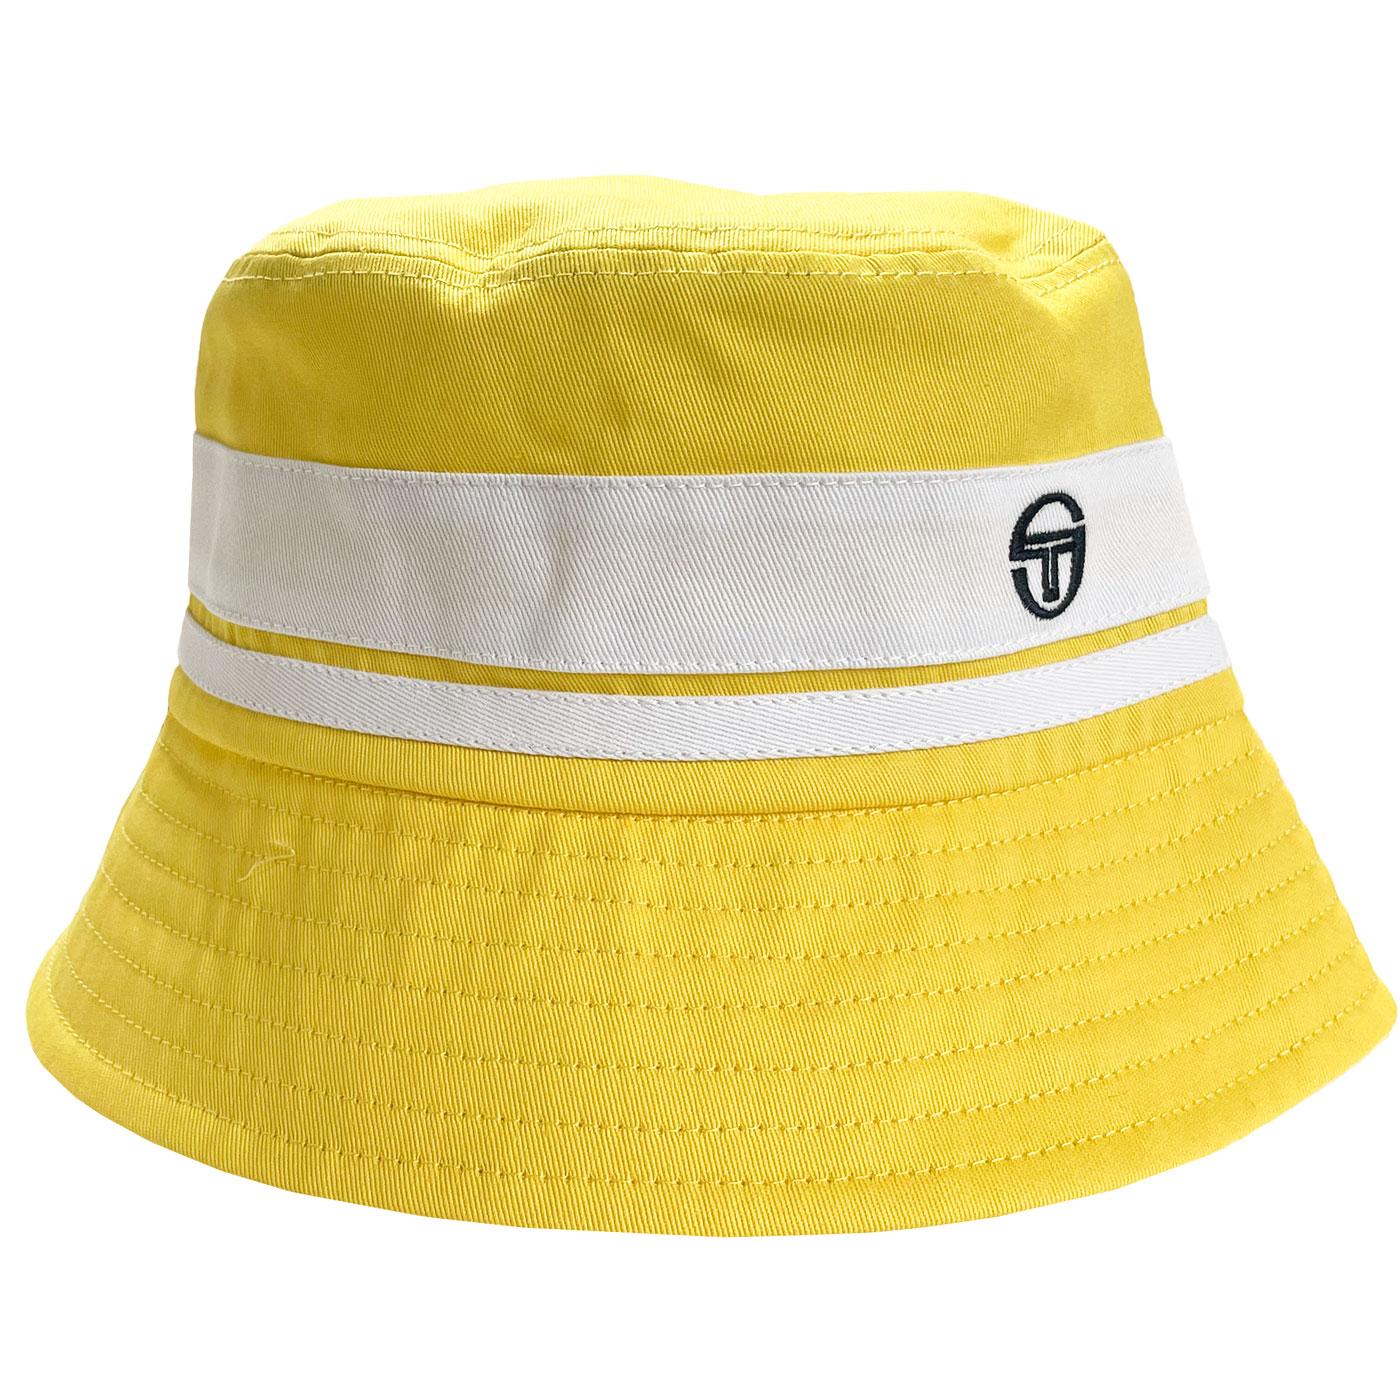 SERGIO TACCHINI Newsford Retro 90s Bucket Hat in Lemon